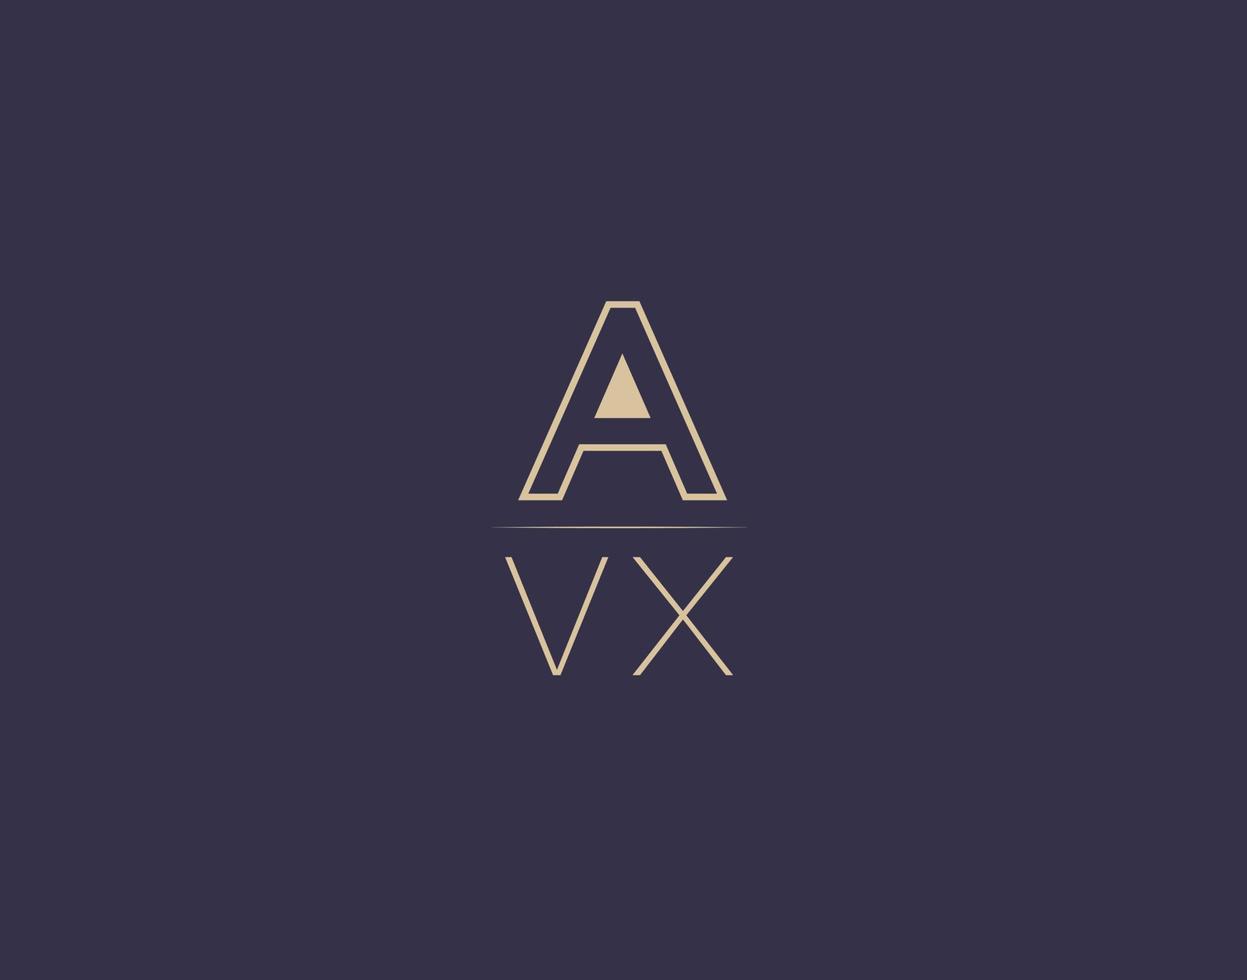 avx letter logo design moderne minimalistische vektorbilder vektor